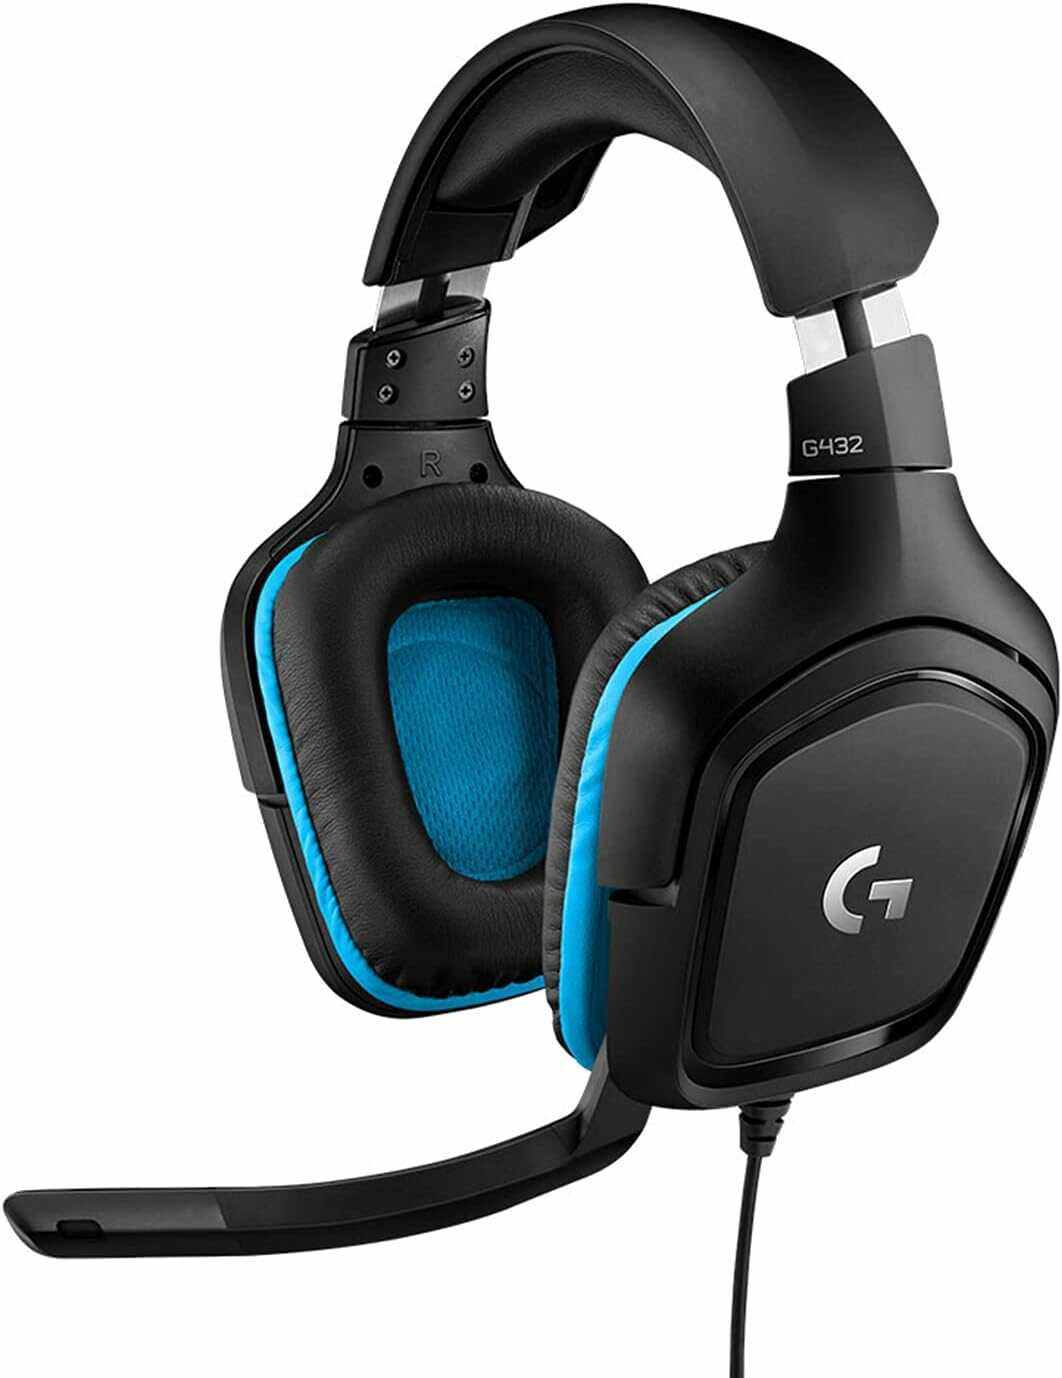 Logitech G432 kabelgebundenes Gaming Headset für 42€ statt 53,23€